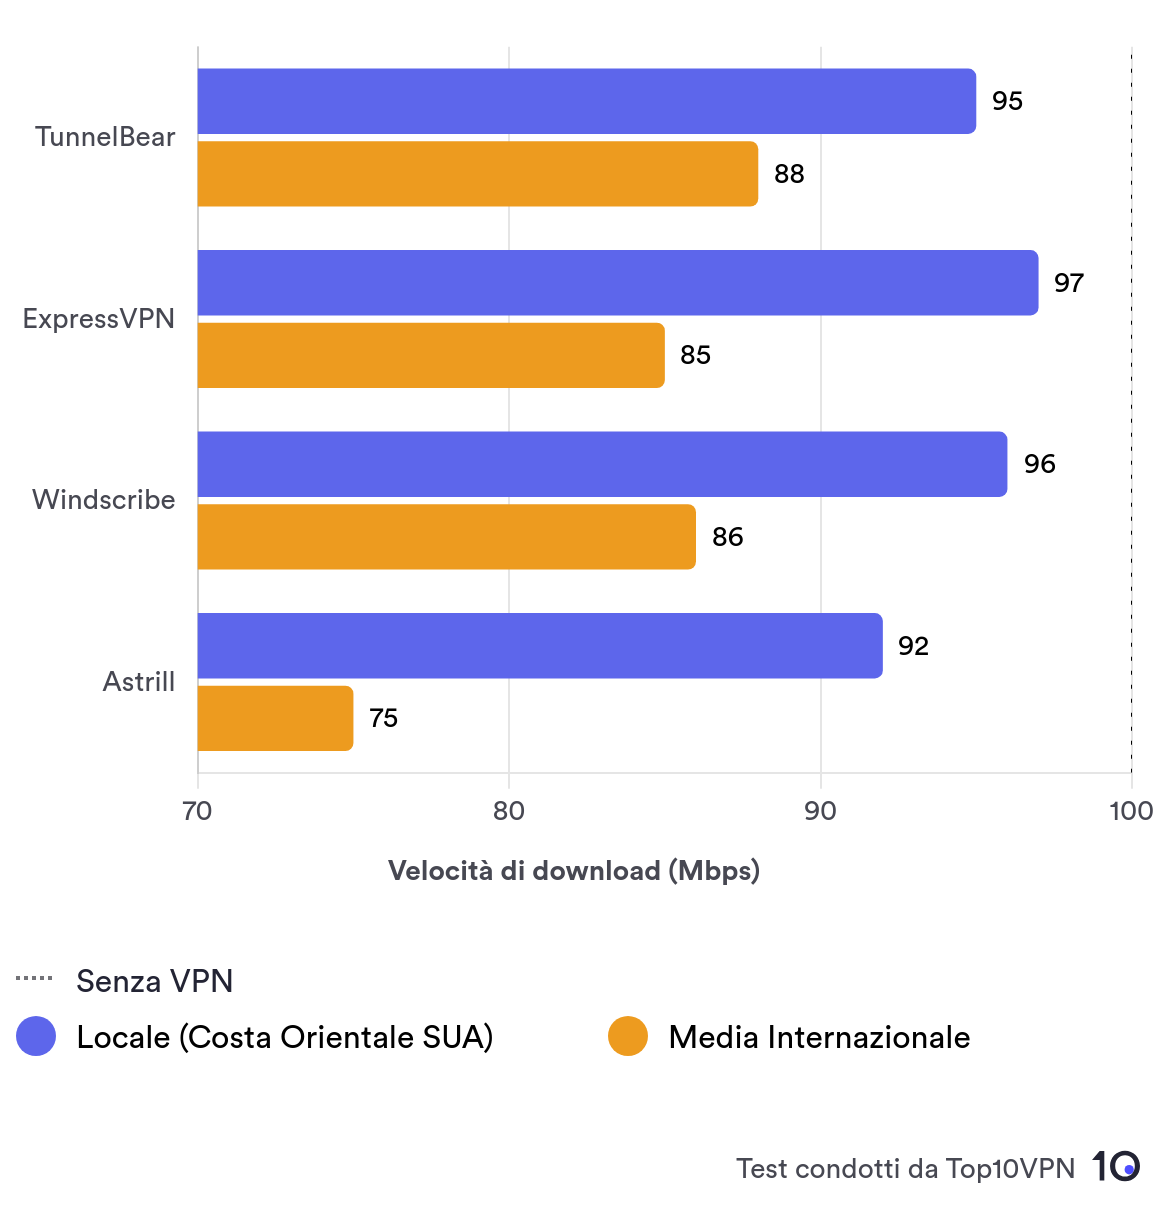 Grafico a barre di confronto che mostra le prestazioni di TunnelBear in termini di velocità locale rispetto alle altre principali VPN.